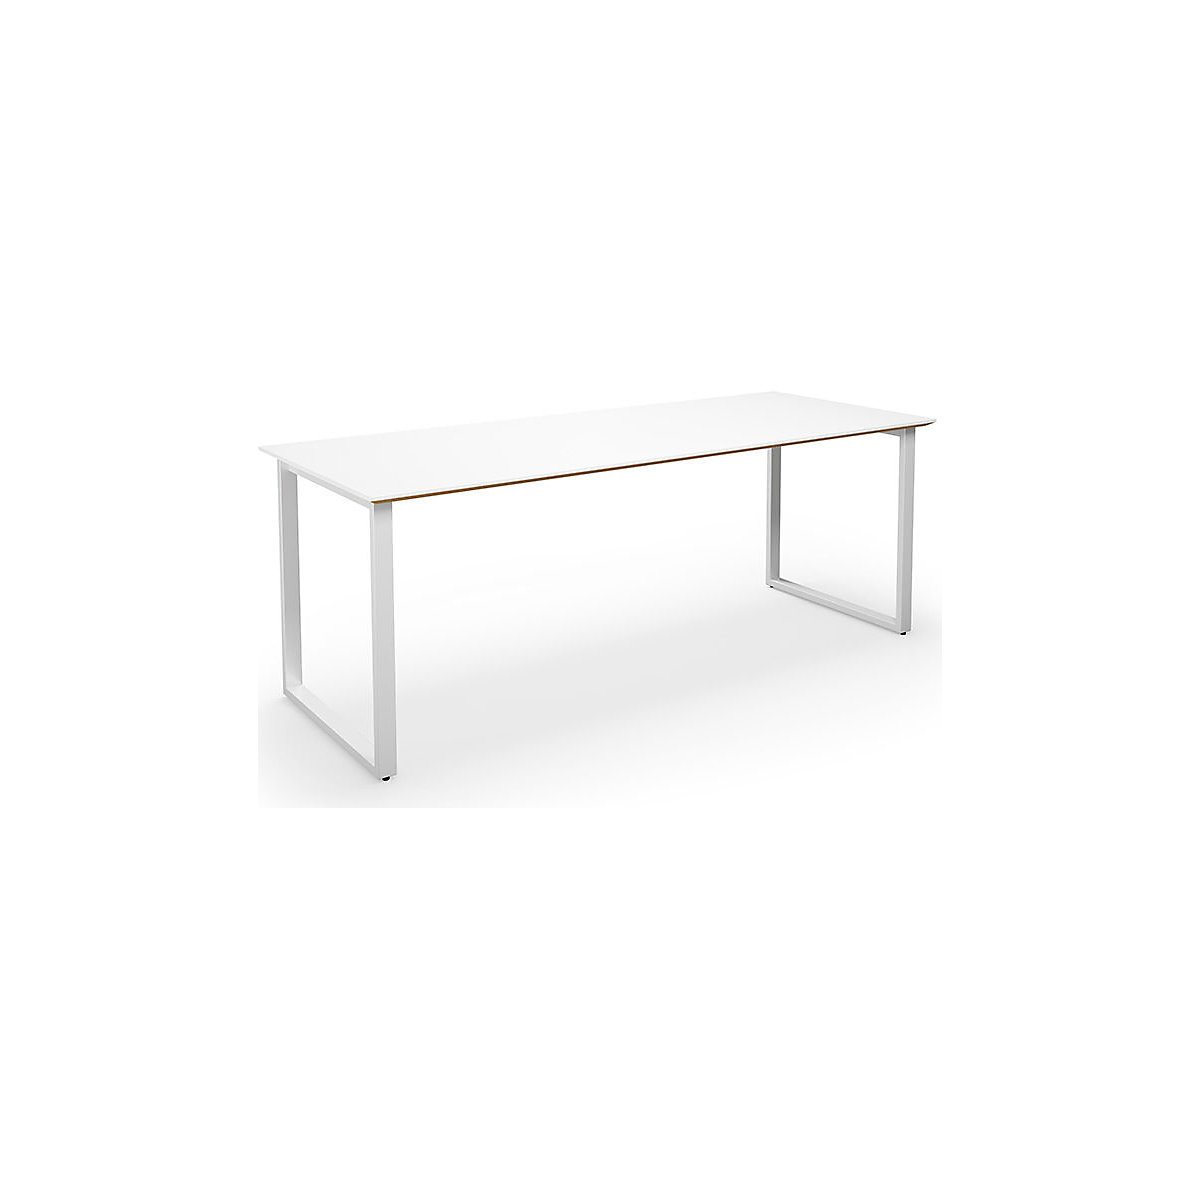 DUO-O Trend multi-purpose desk, straight tabletop, WxD 1800 x 800 mm, white, white-2